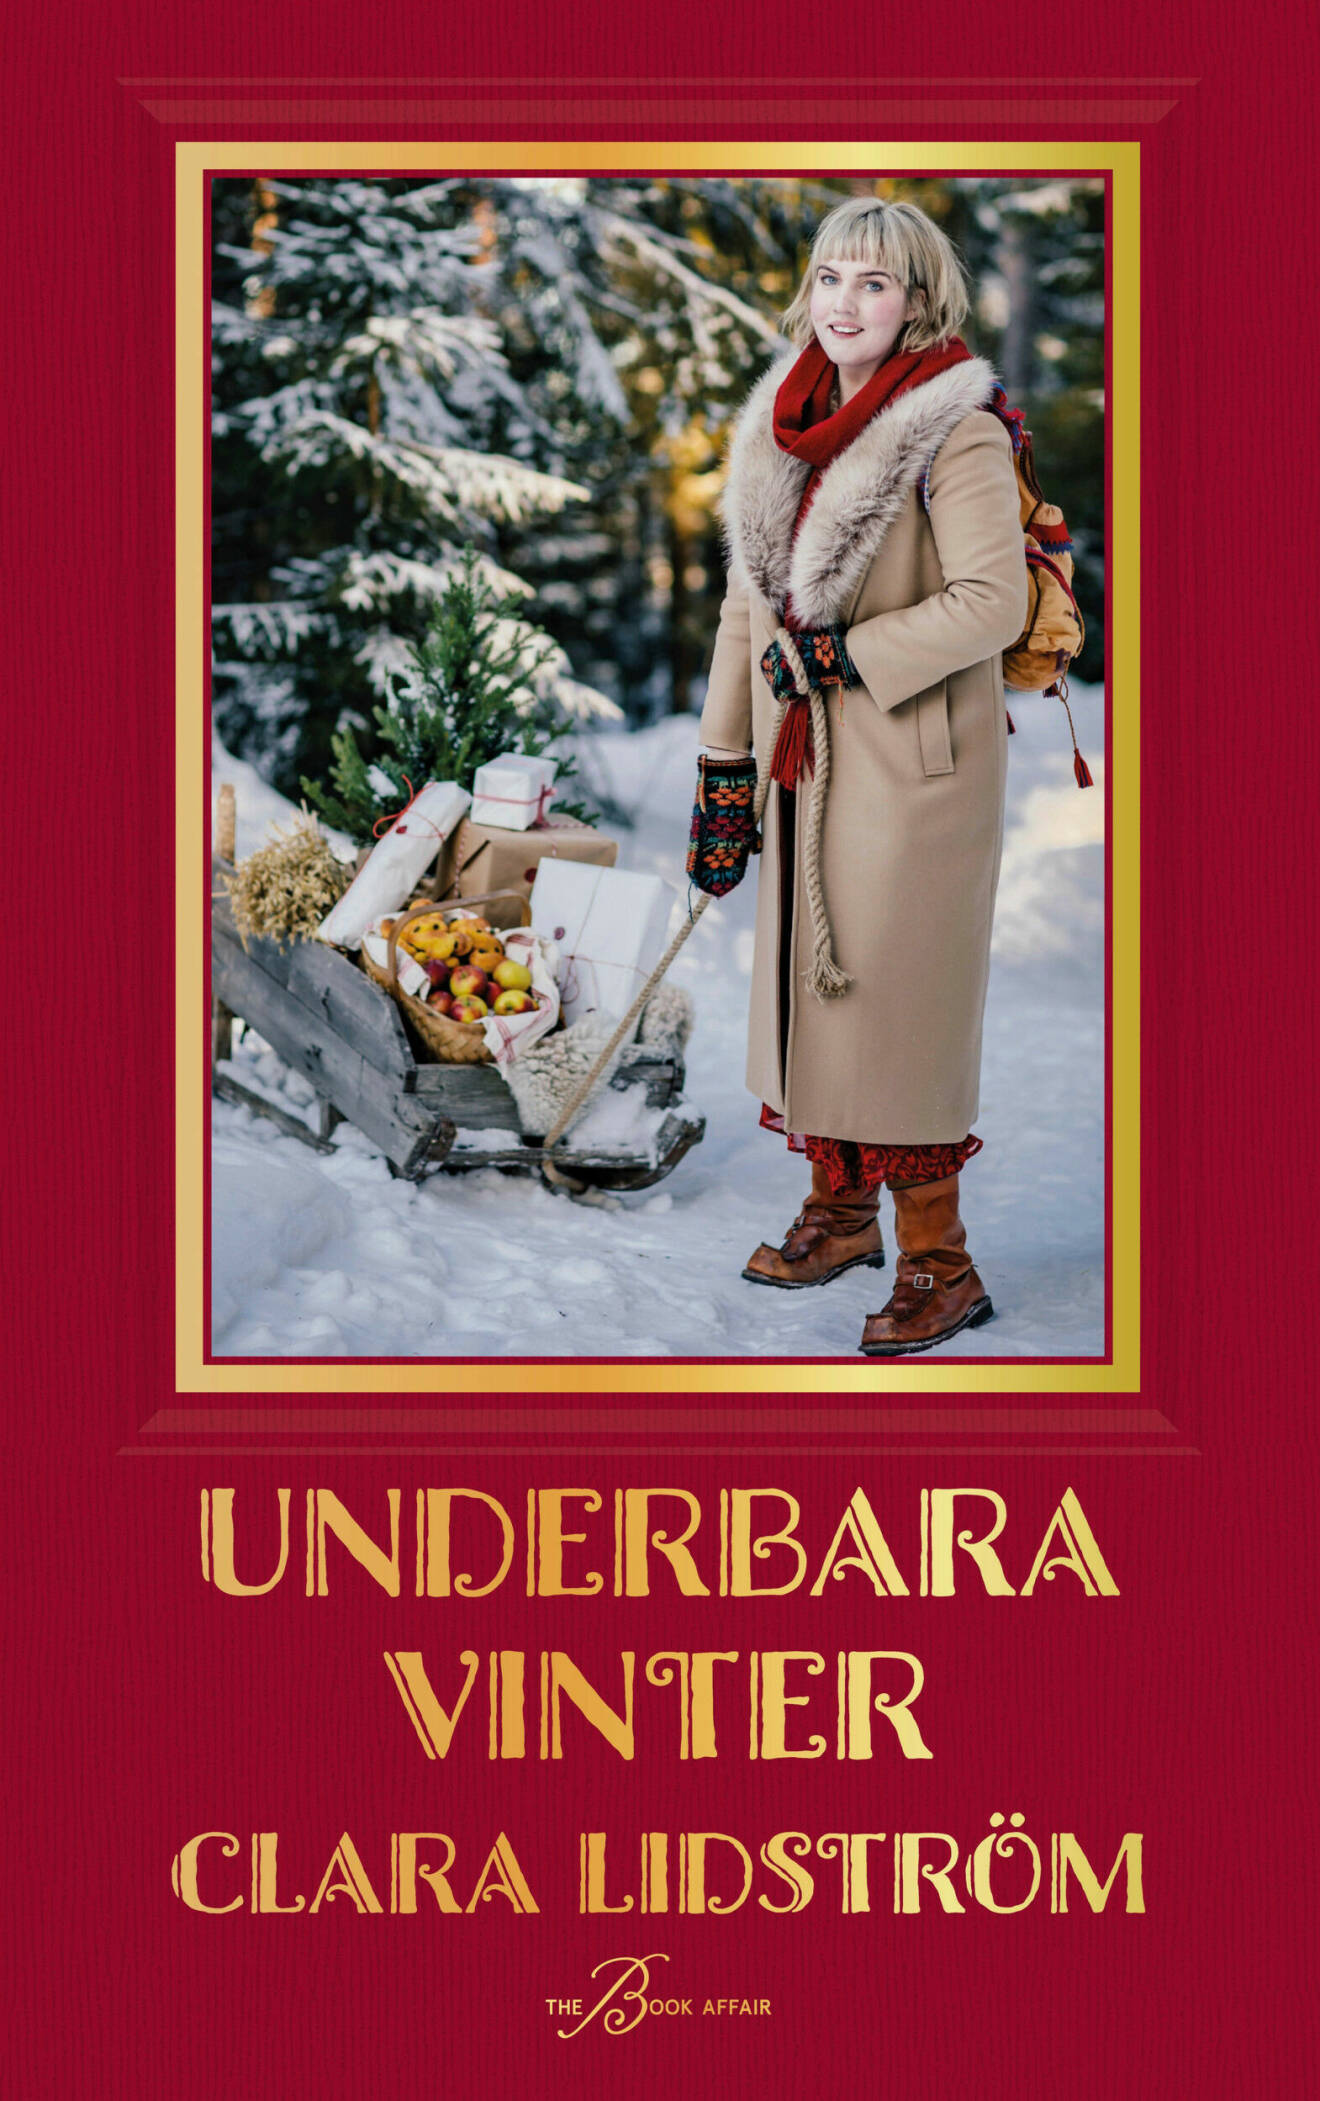 Bokomslag till Clara Lidströms bok Underbara vinter